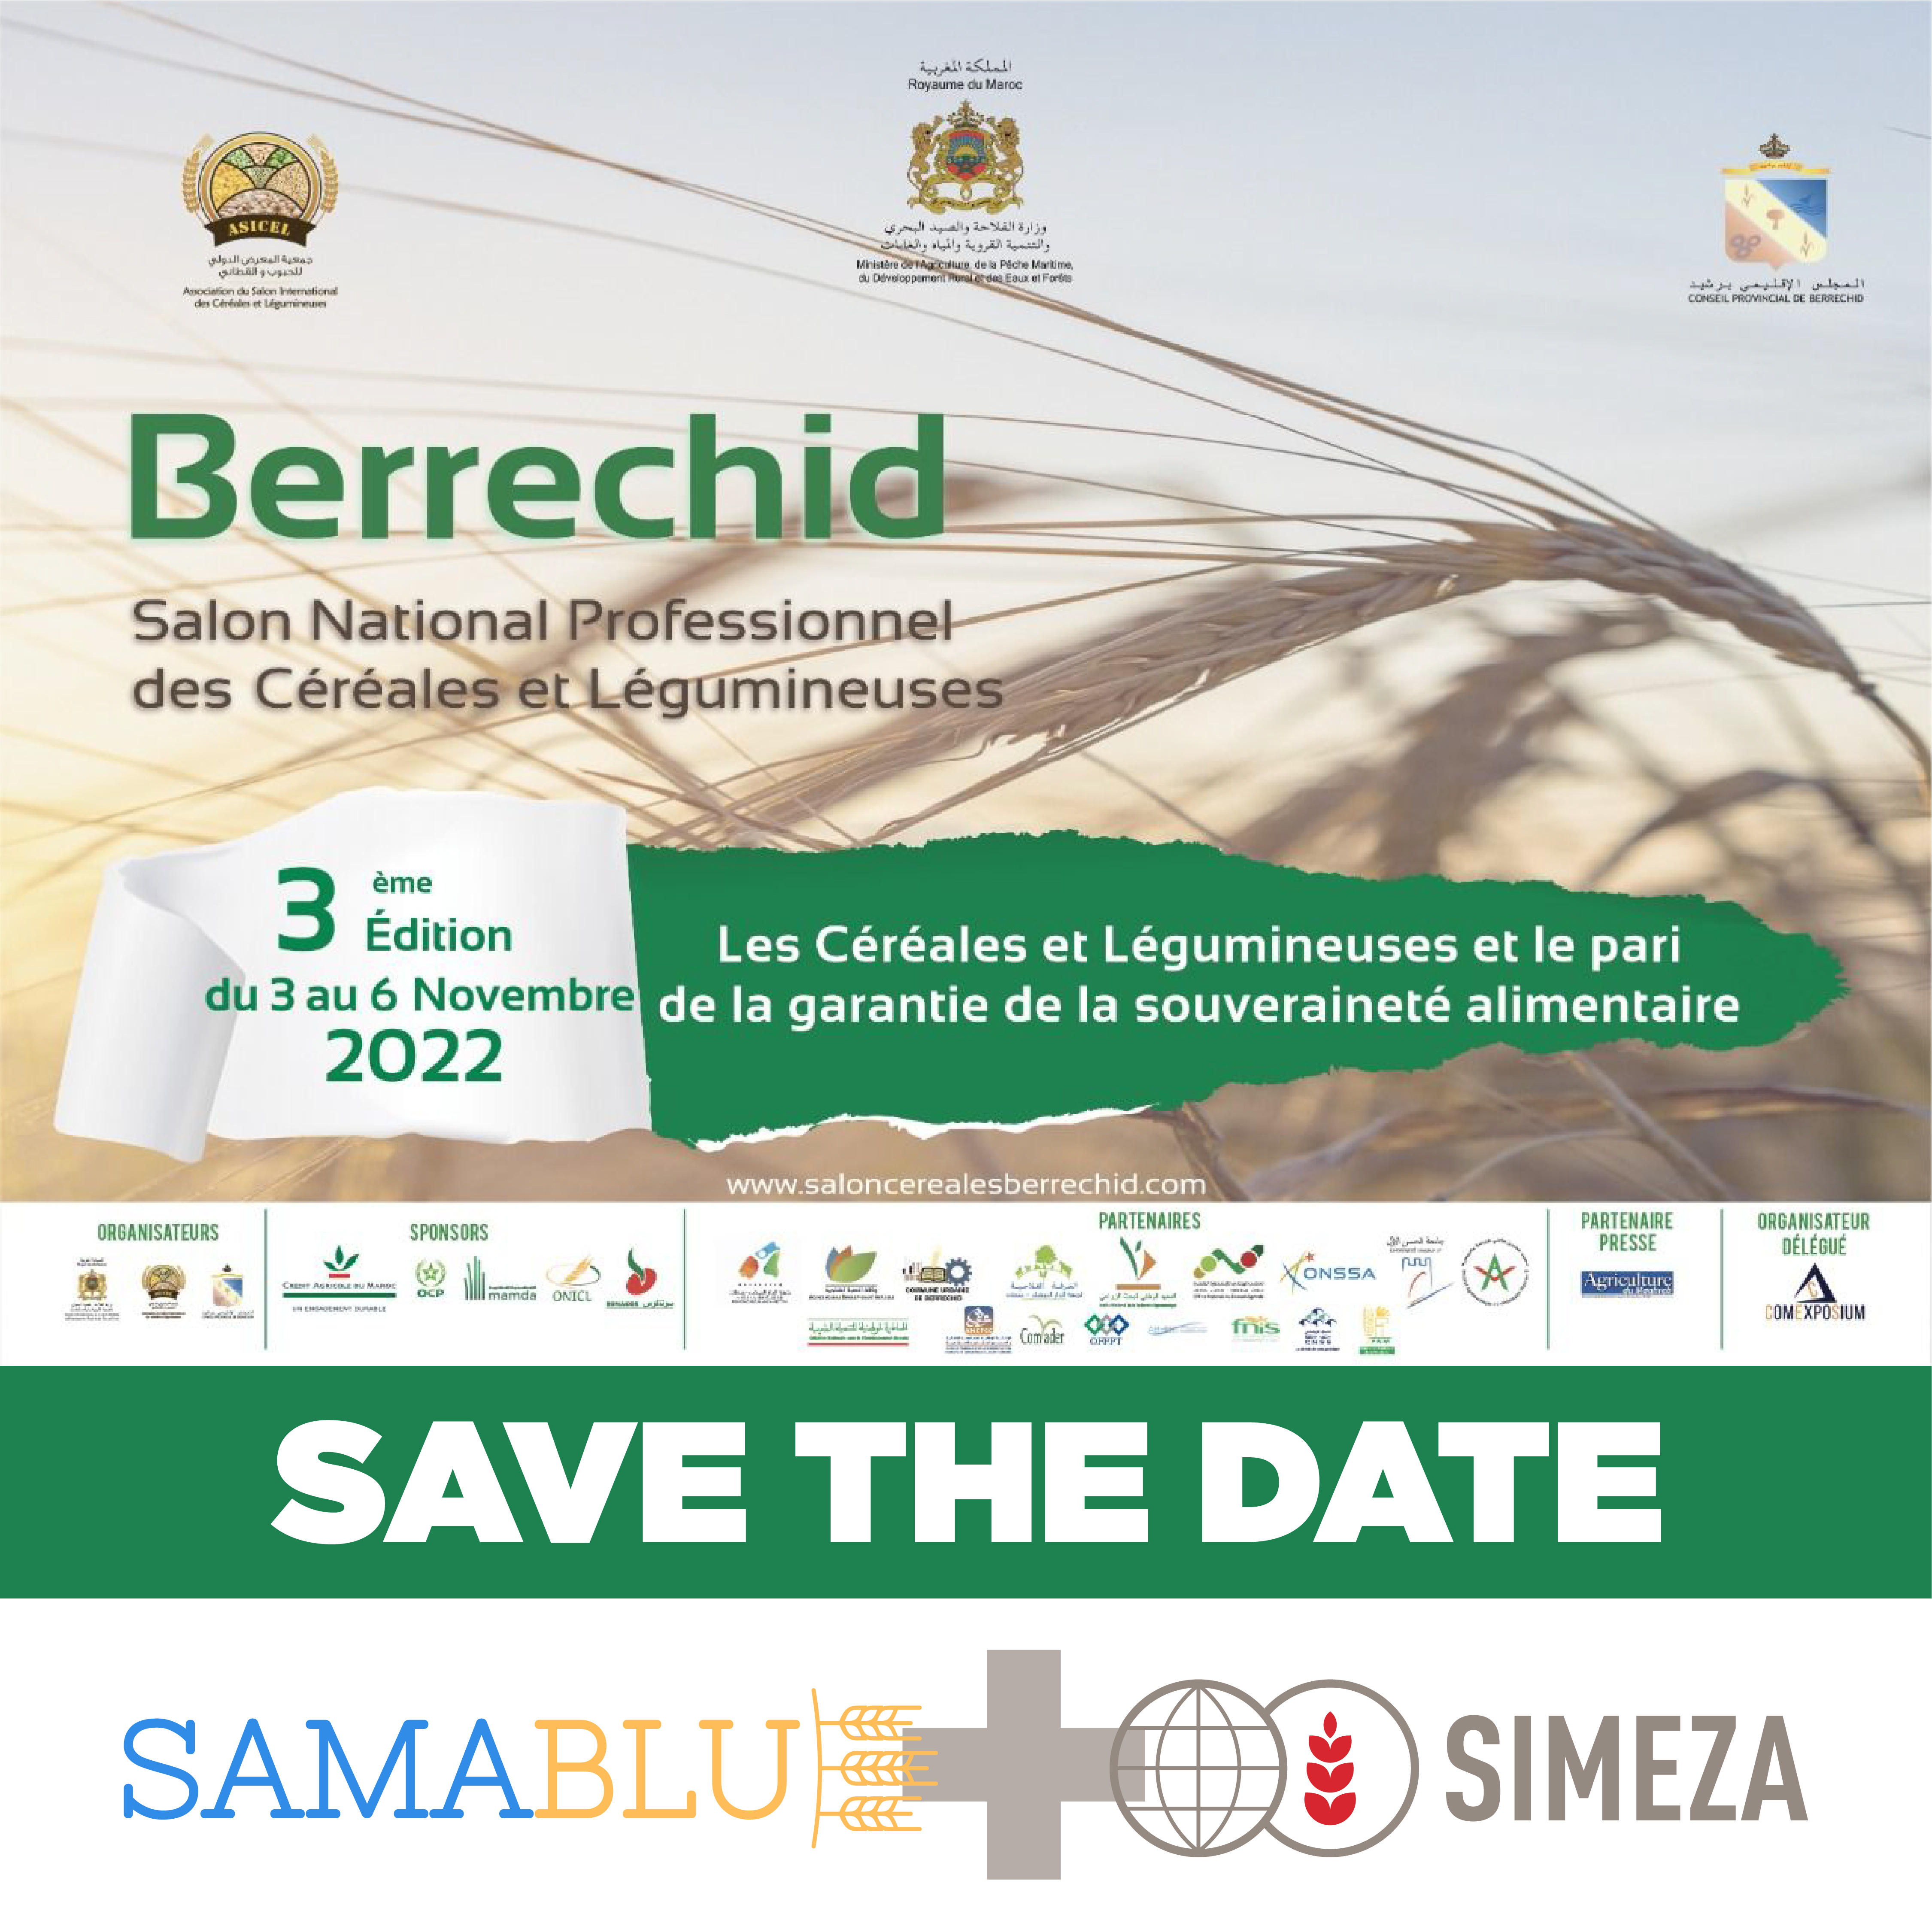 SIMEZA will participate in the 3rd edition of Berrechid (Morocco)